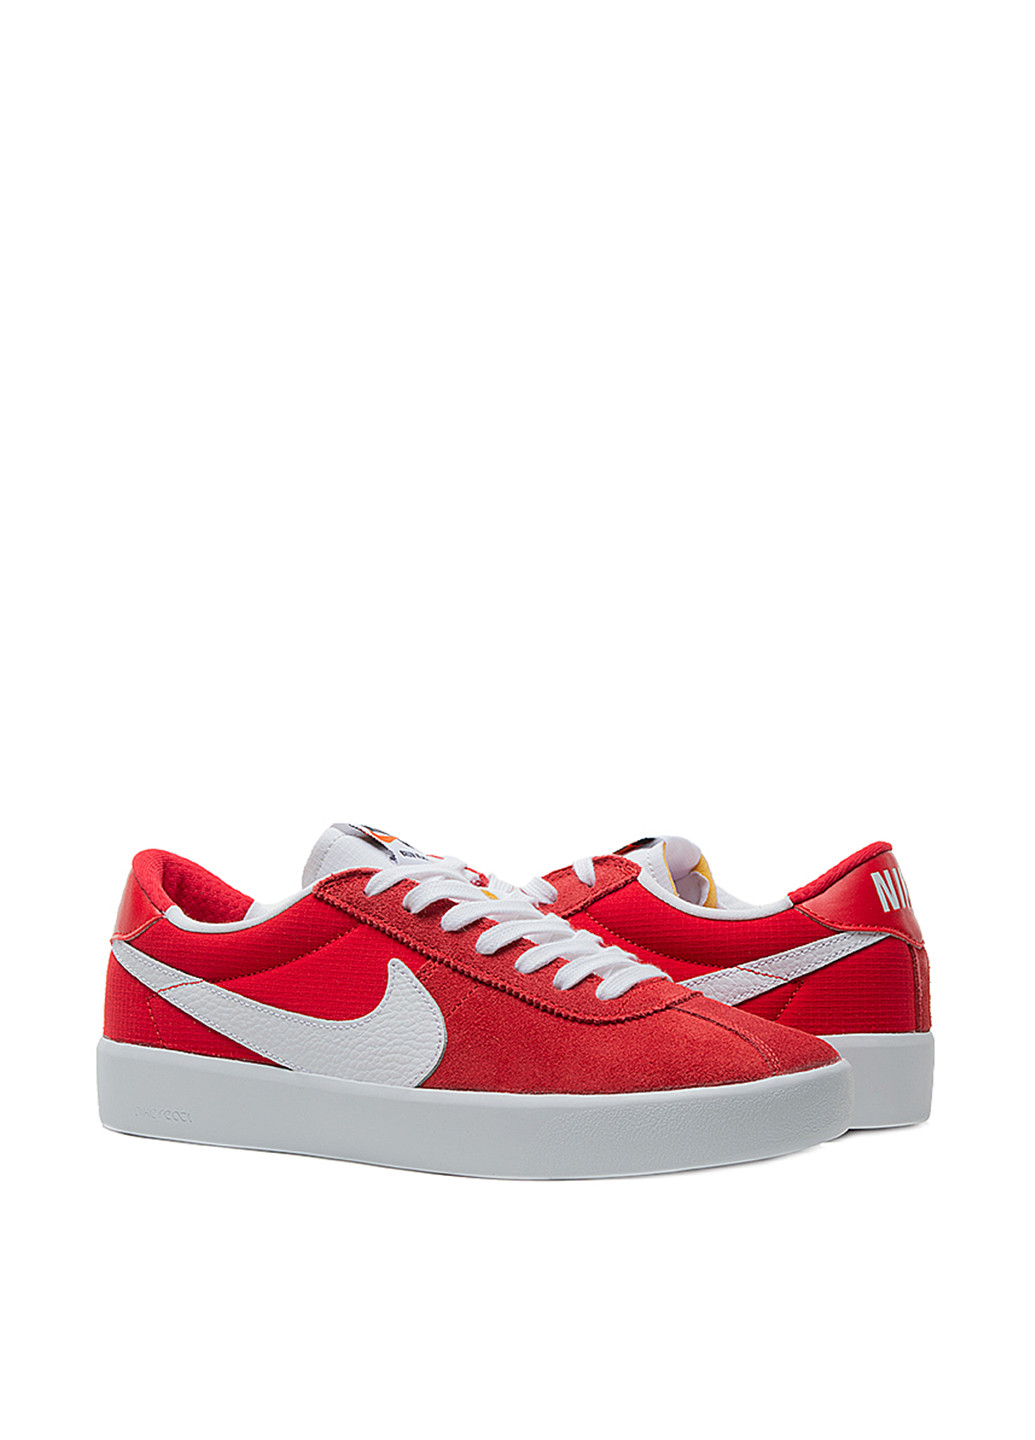 Красные кроссовки Nike Nike SB Bruin React с белой подошвой, с логотипом